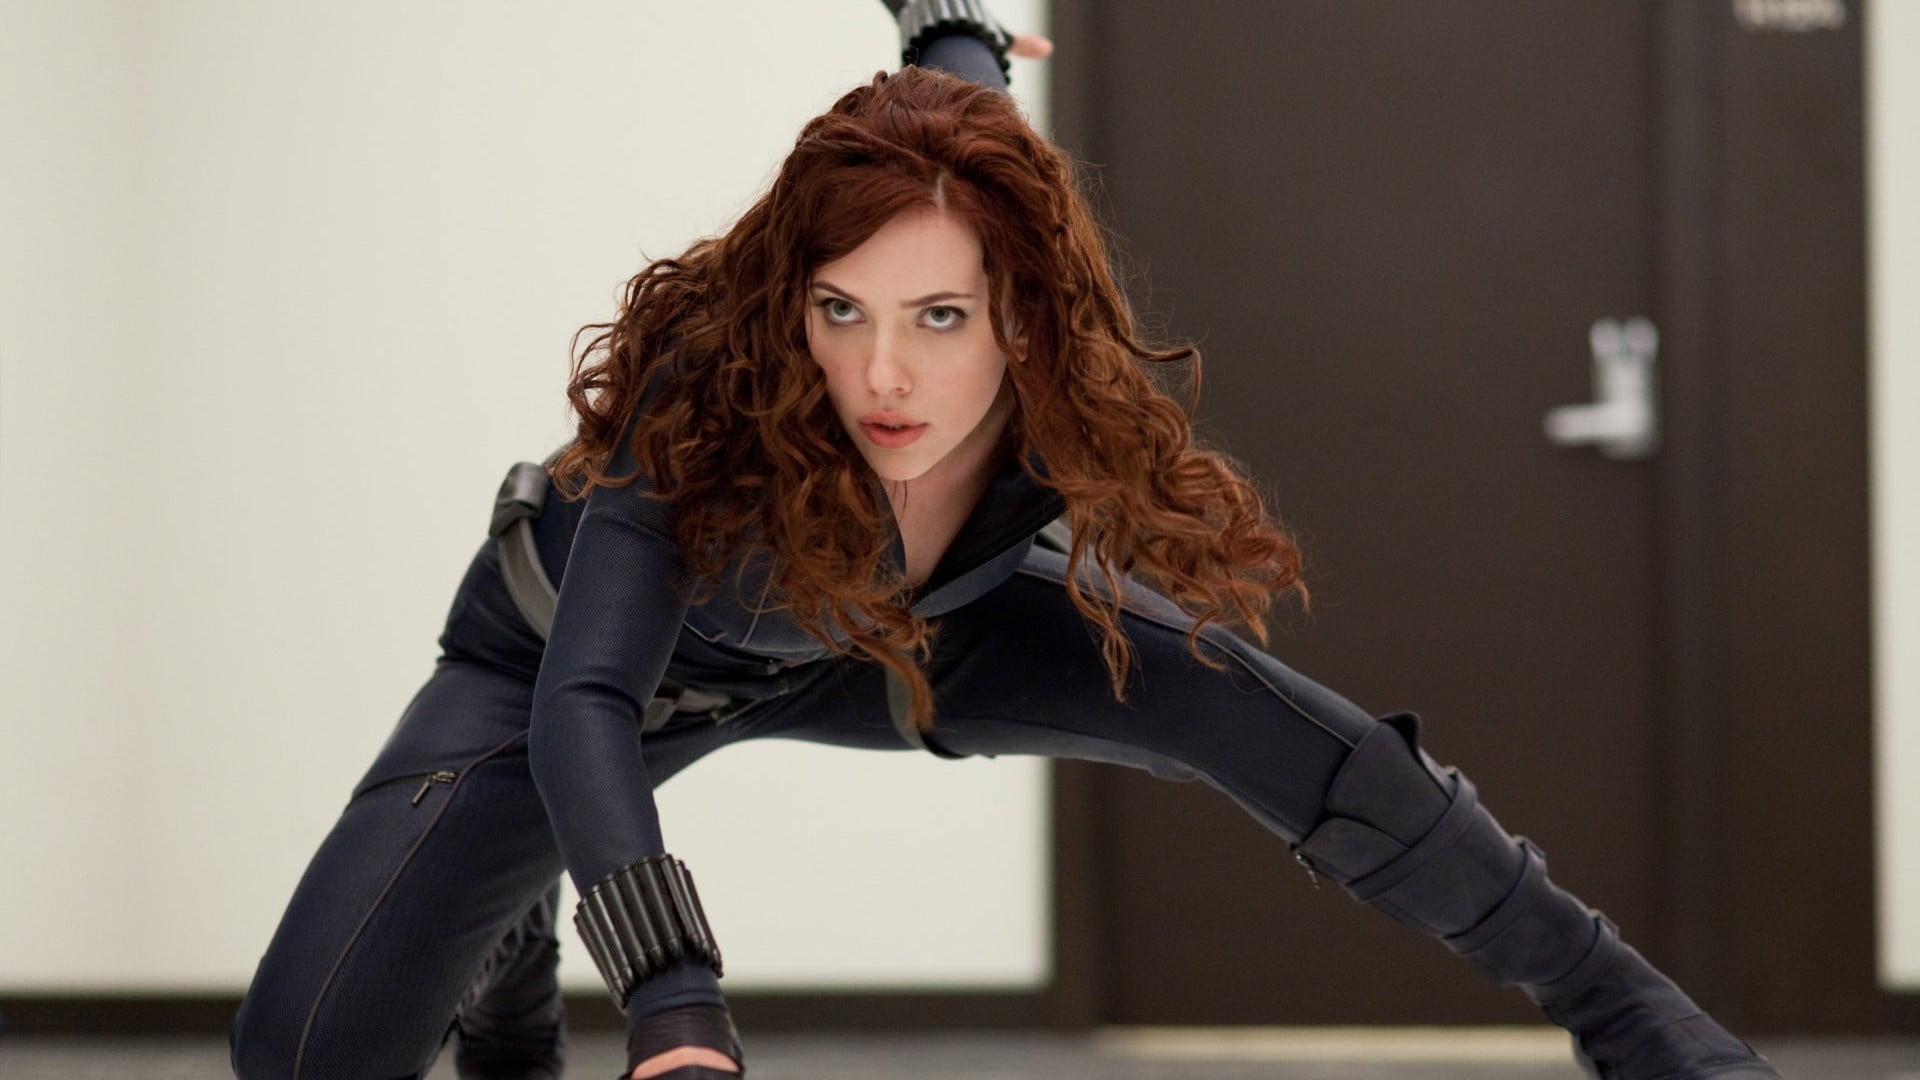 Black Widow movie still, Black Widow, Iron Man 2, superheroines, Scarlett Johansson